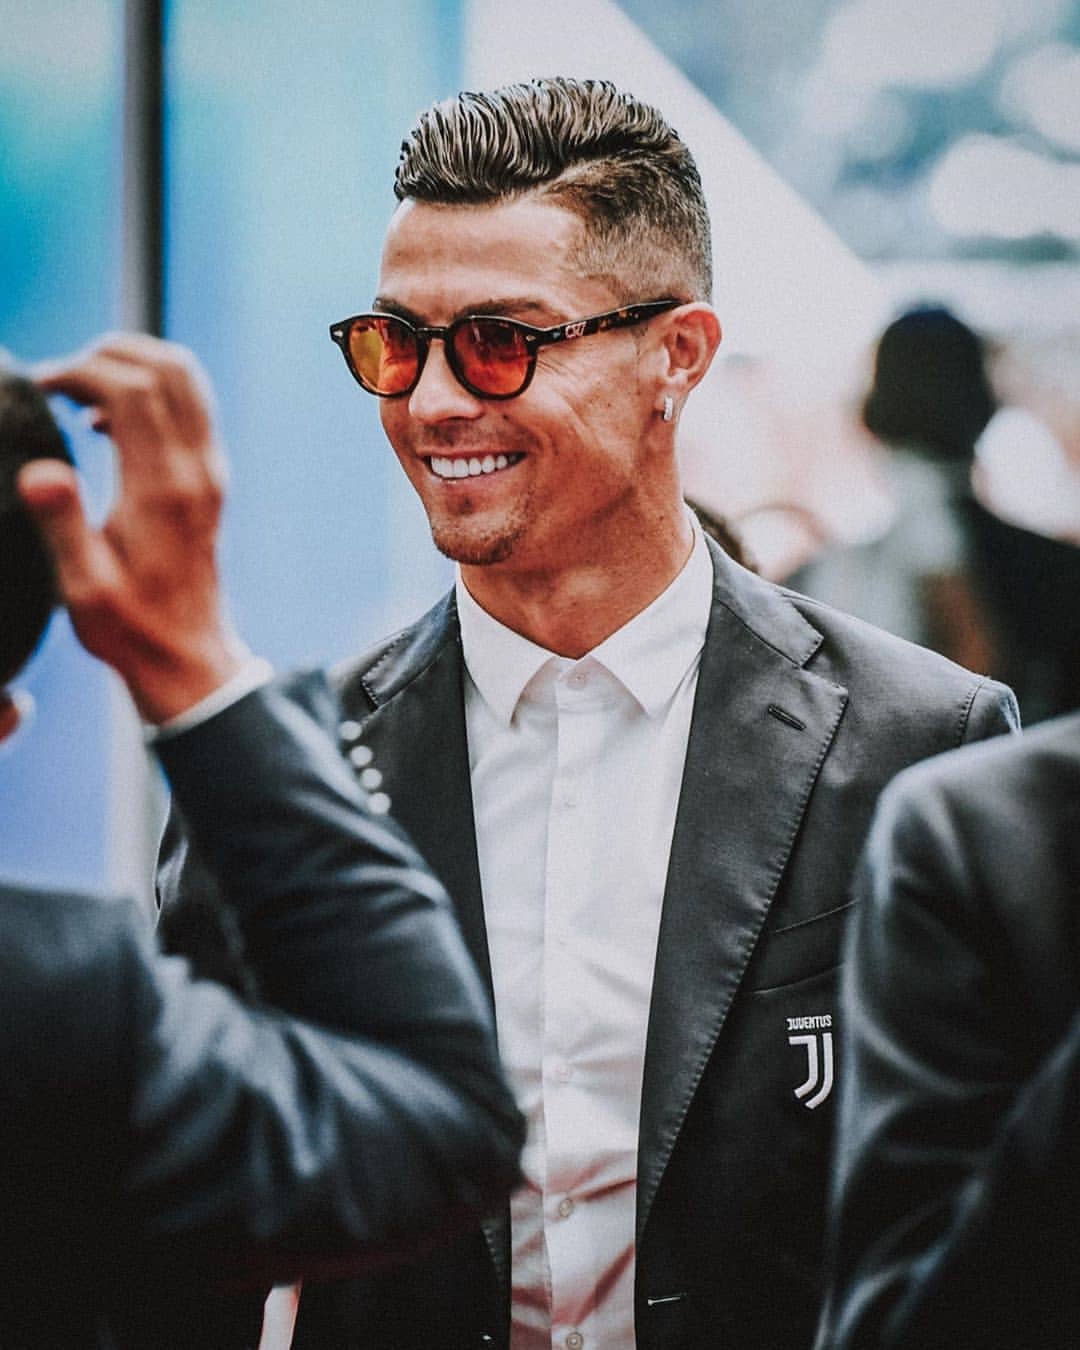 Hình ảnh Cristiano Ronaldo là một trong những thứ khiến các fan cuồng của anh ta không thể bỏ qua. Trong những bức ảnh này, bạn sẽ được trải nghiệm rõ hơn về nhan sắc điển trai, tài năng bẩm sinh và sự nghiệp huy hoàng của siêu sao bóng đá này.